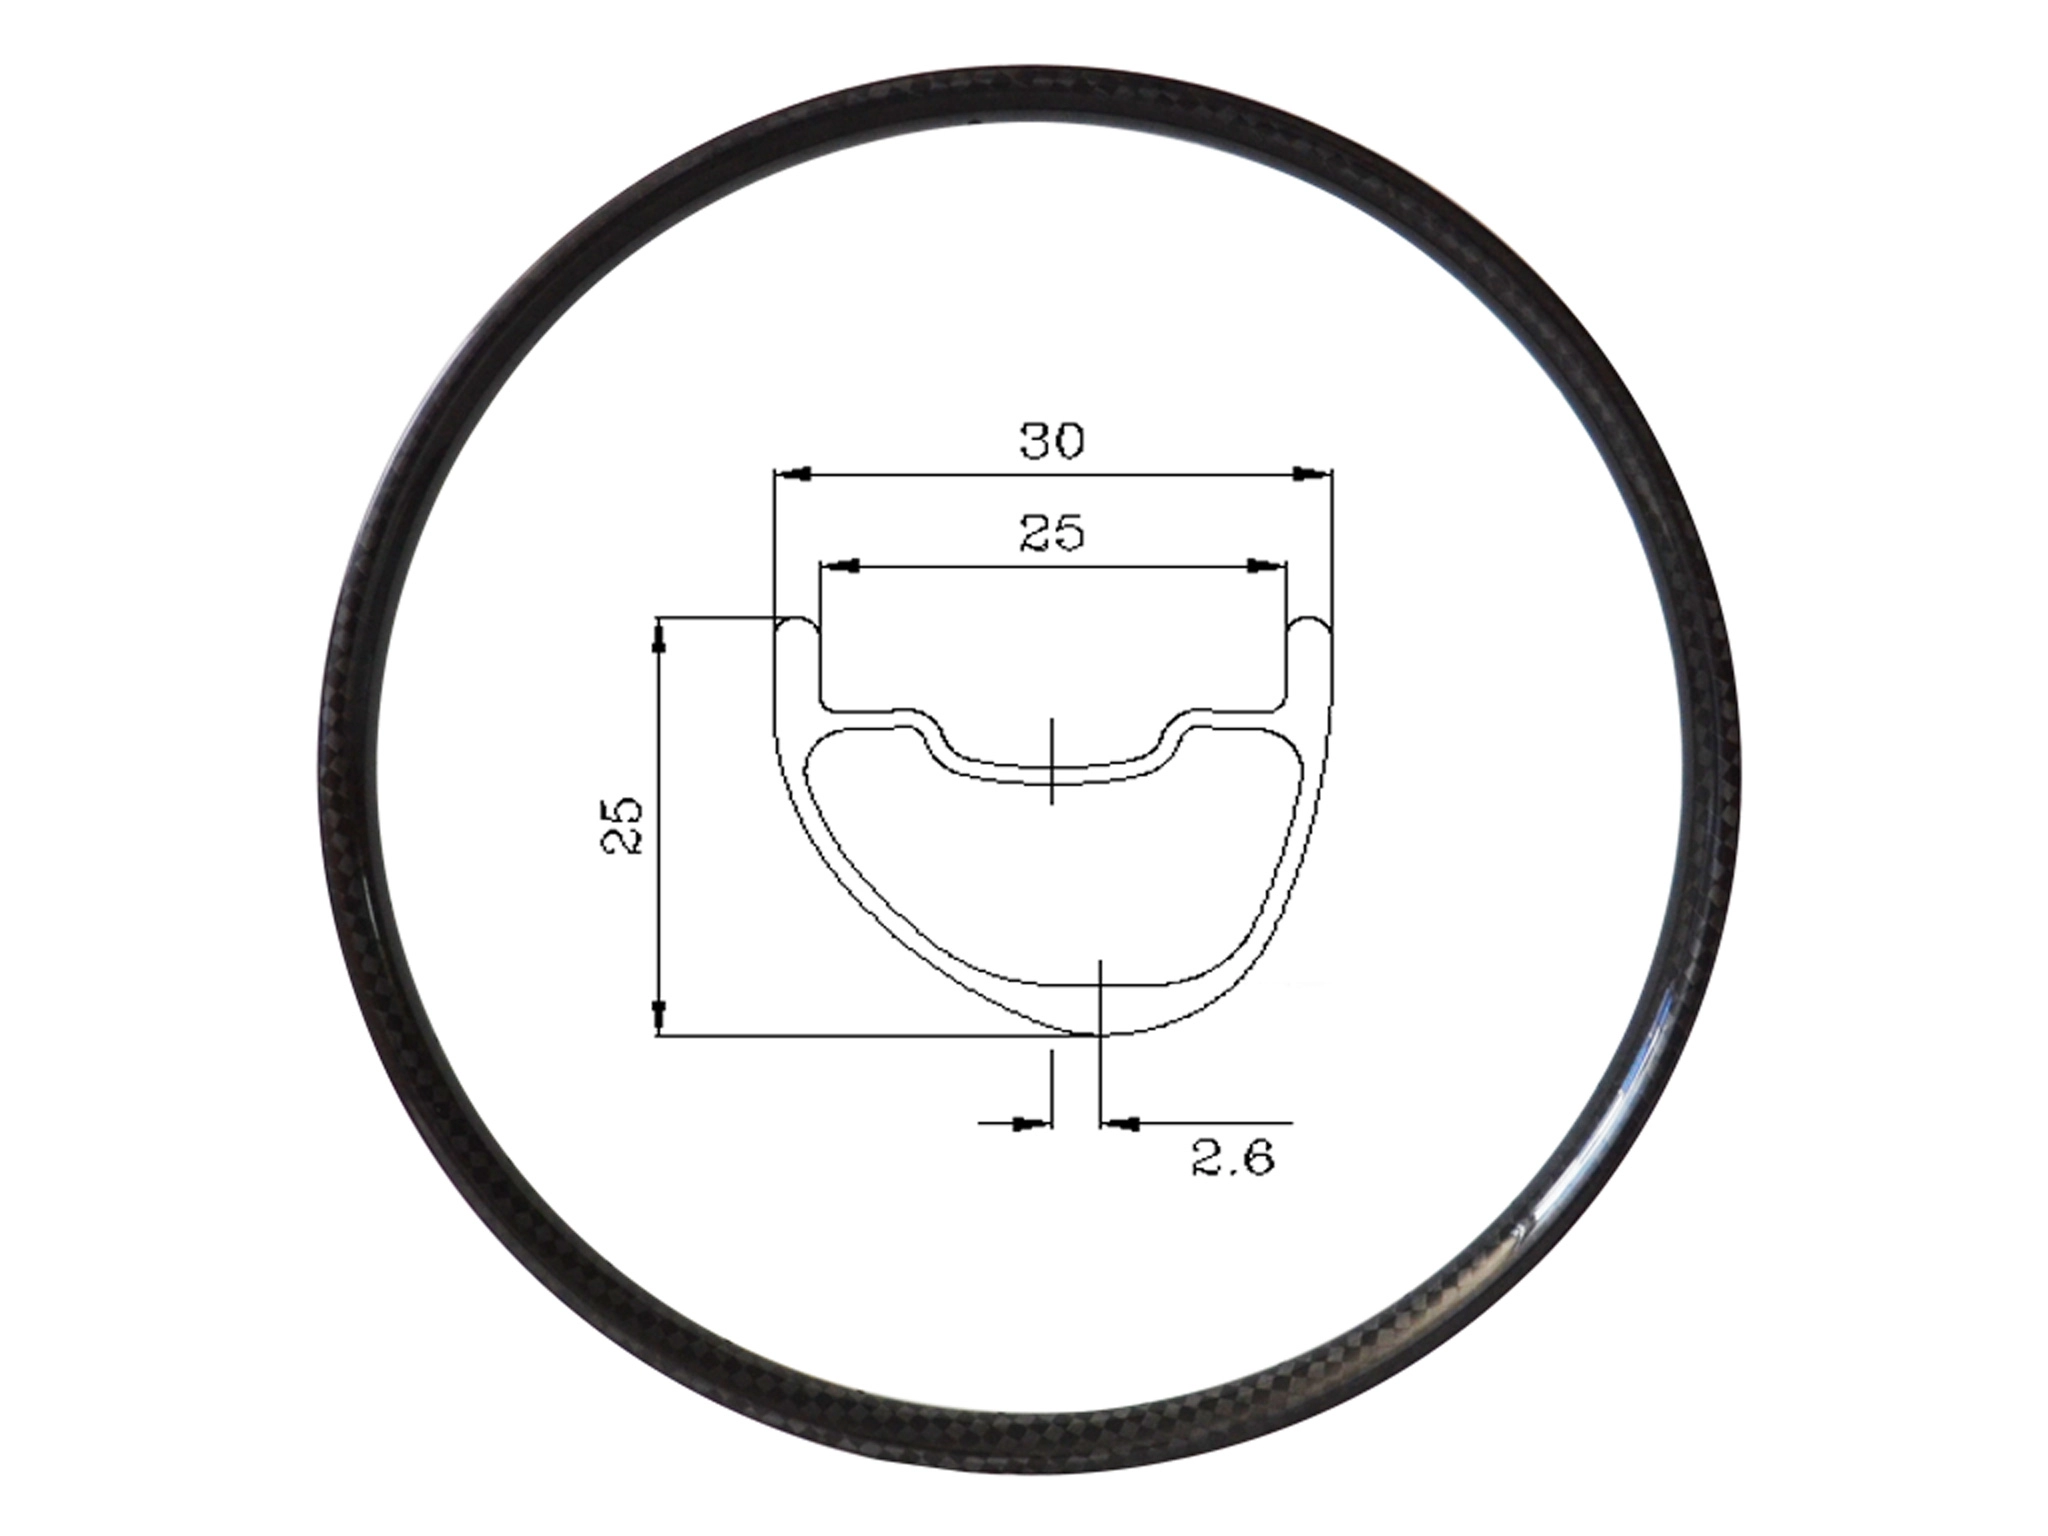 Асимметричные карбоновые диски XC шириной 30 мм и глубиной 25 мм